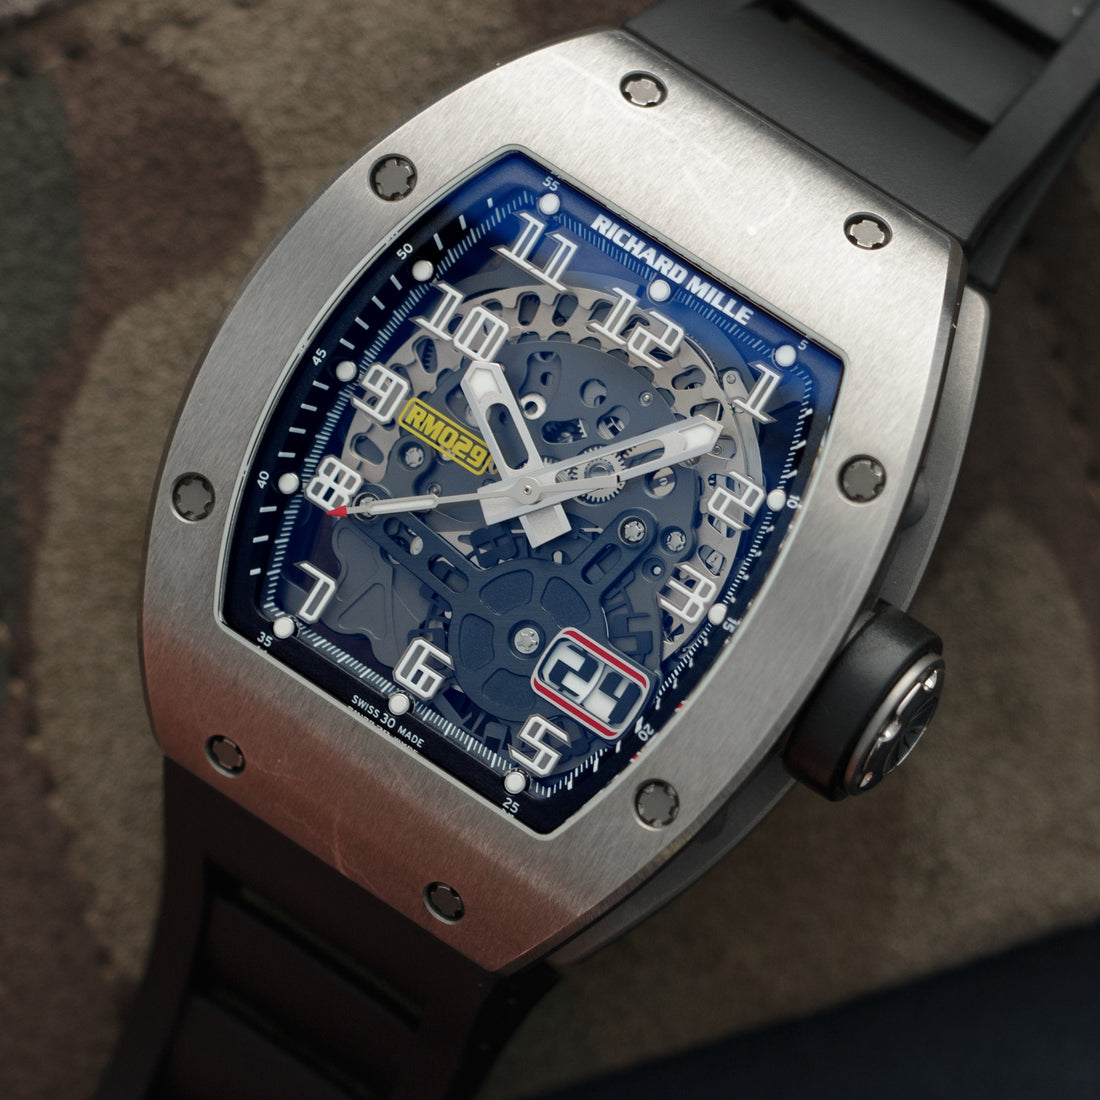 Richard Mille Titanium Skeleton Watch Ref. RM29